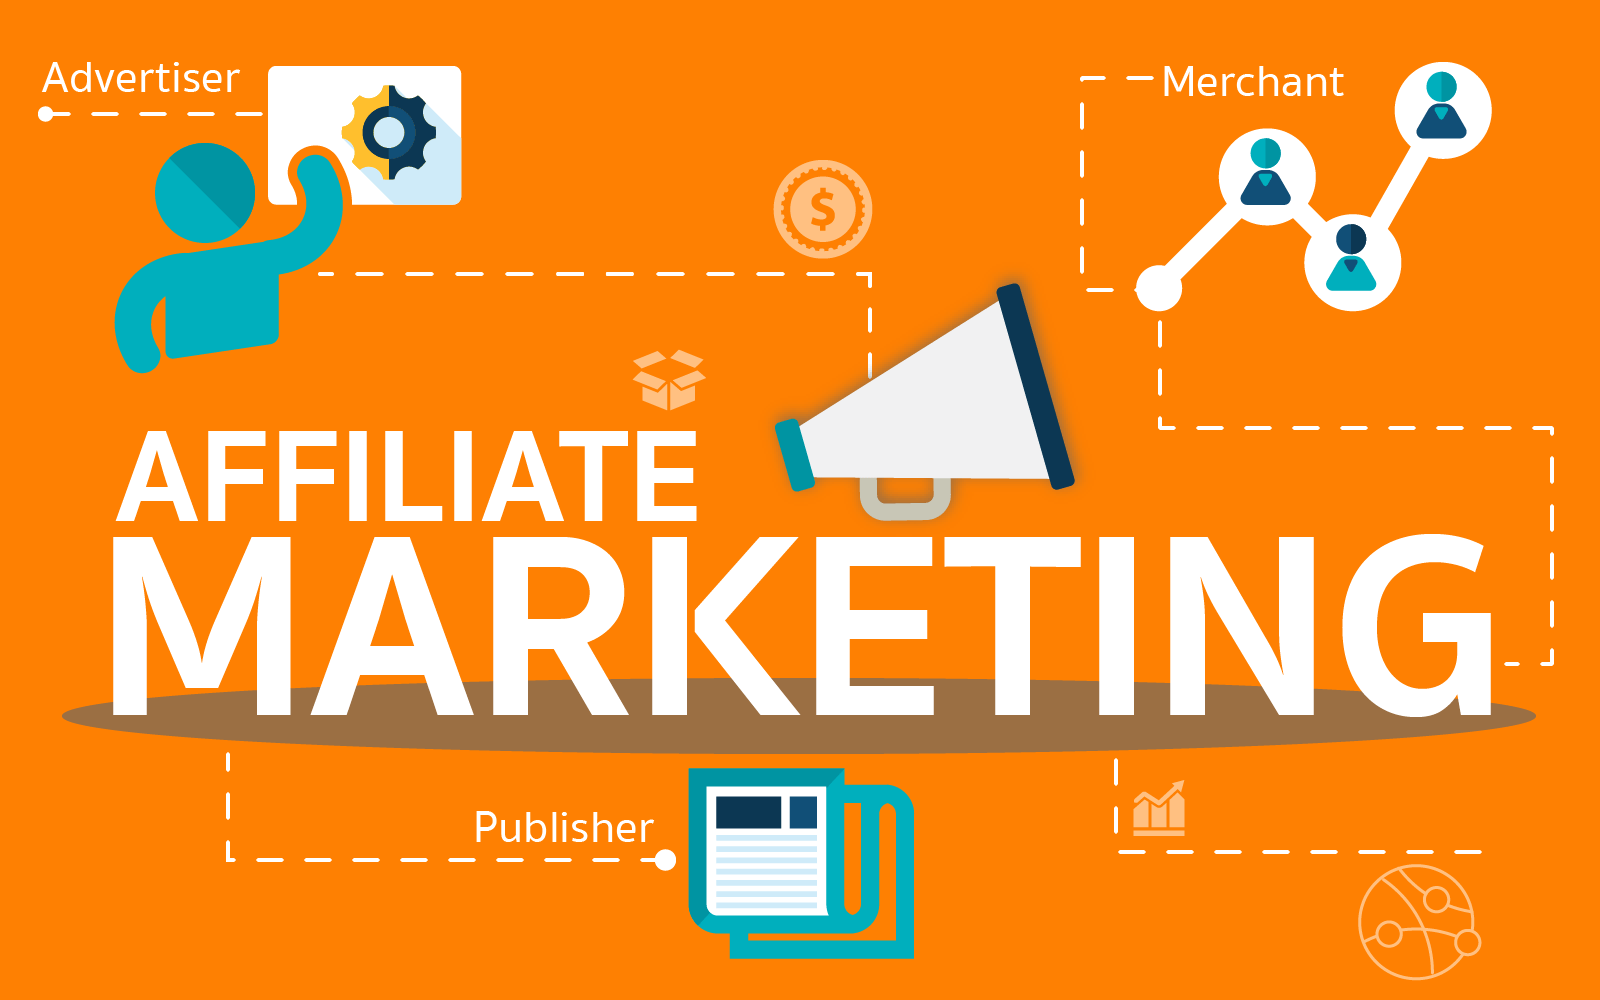 Affiliate Marketing chiến lược tiếp thị giúp tối ưu hóa về mặt chi phí marketing nhất cho các doanh nghiệp